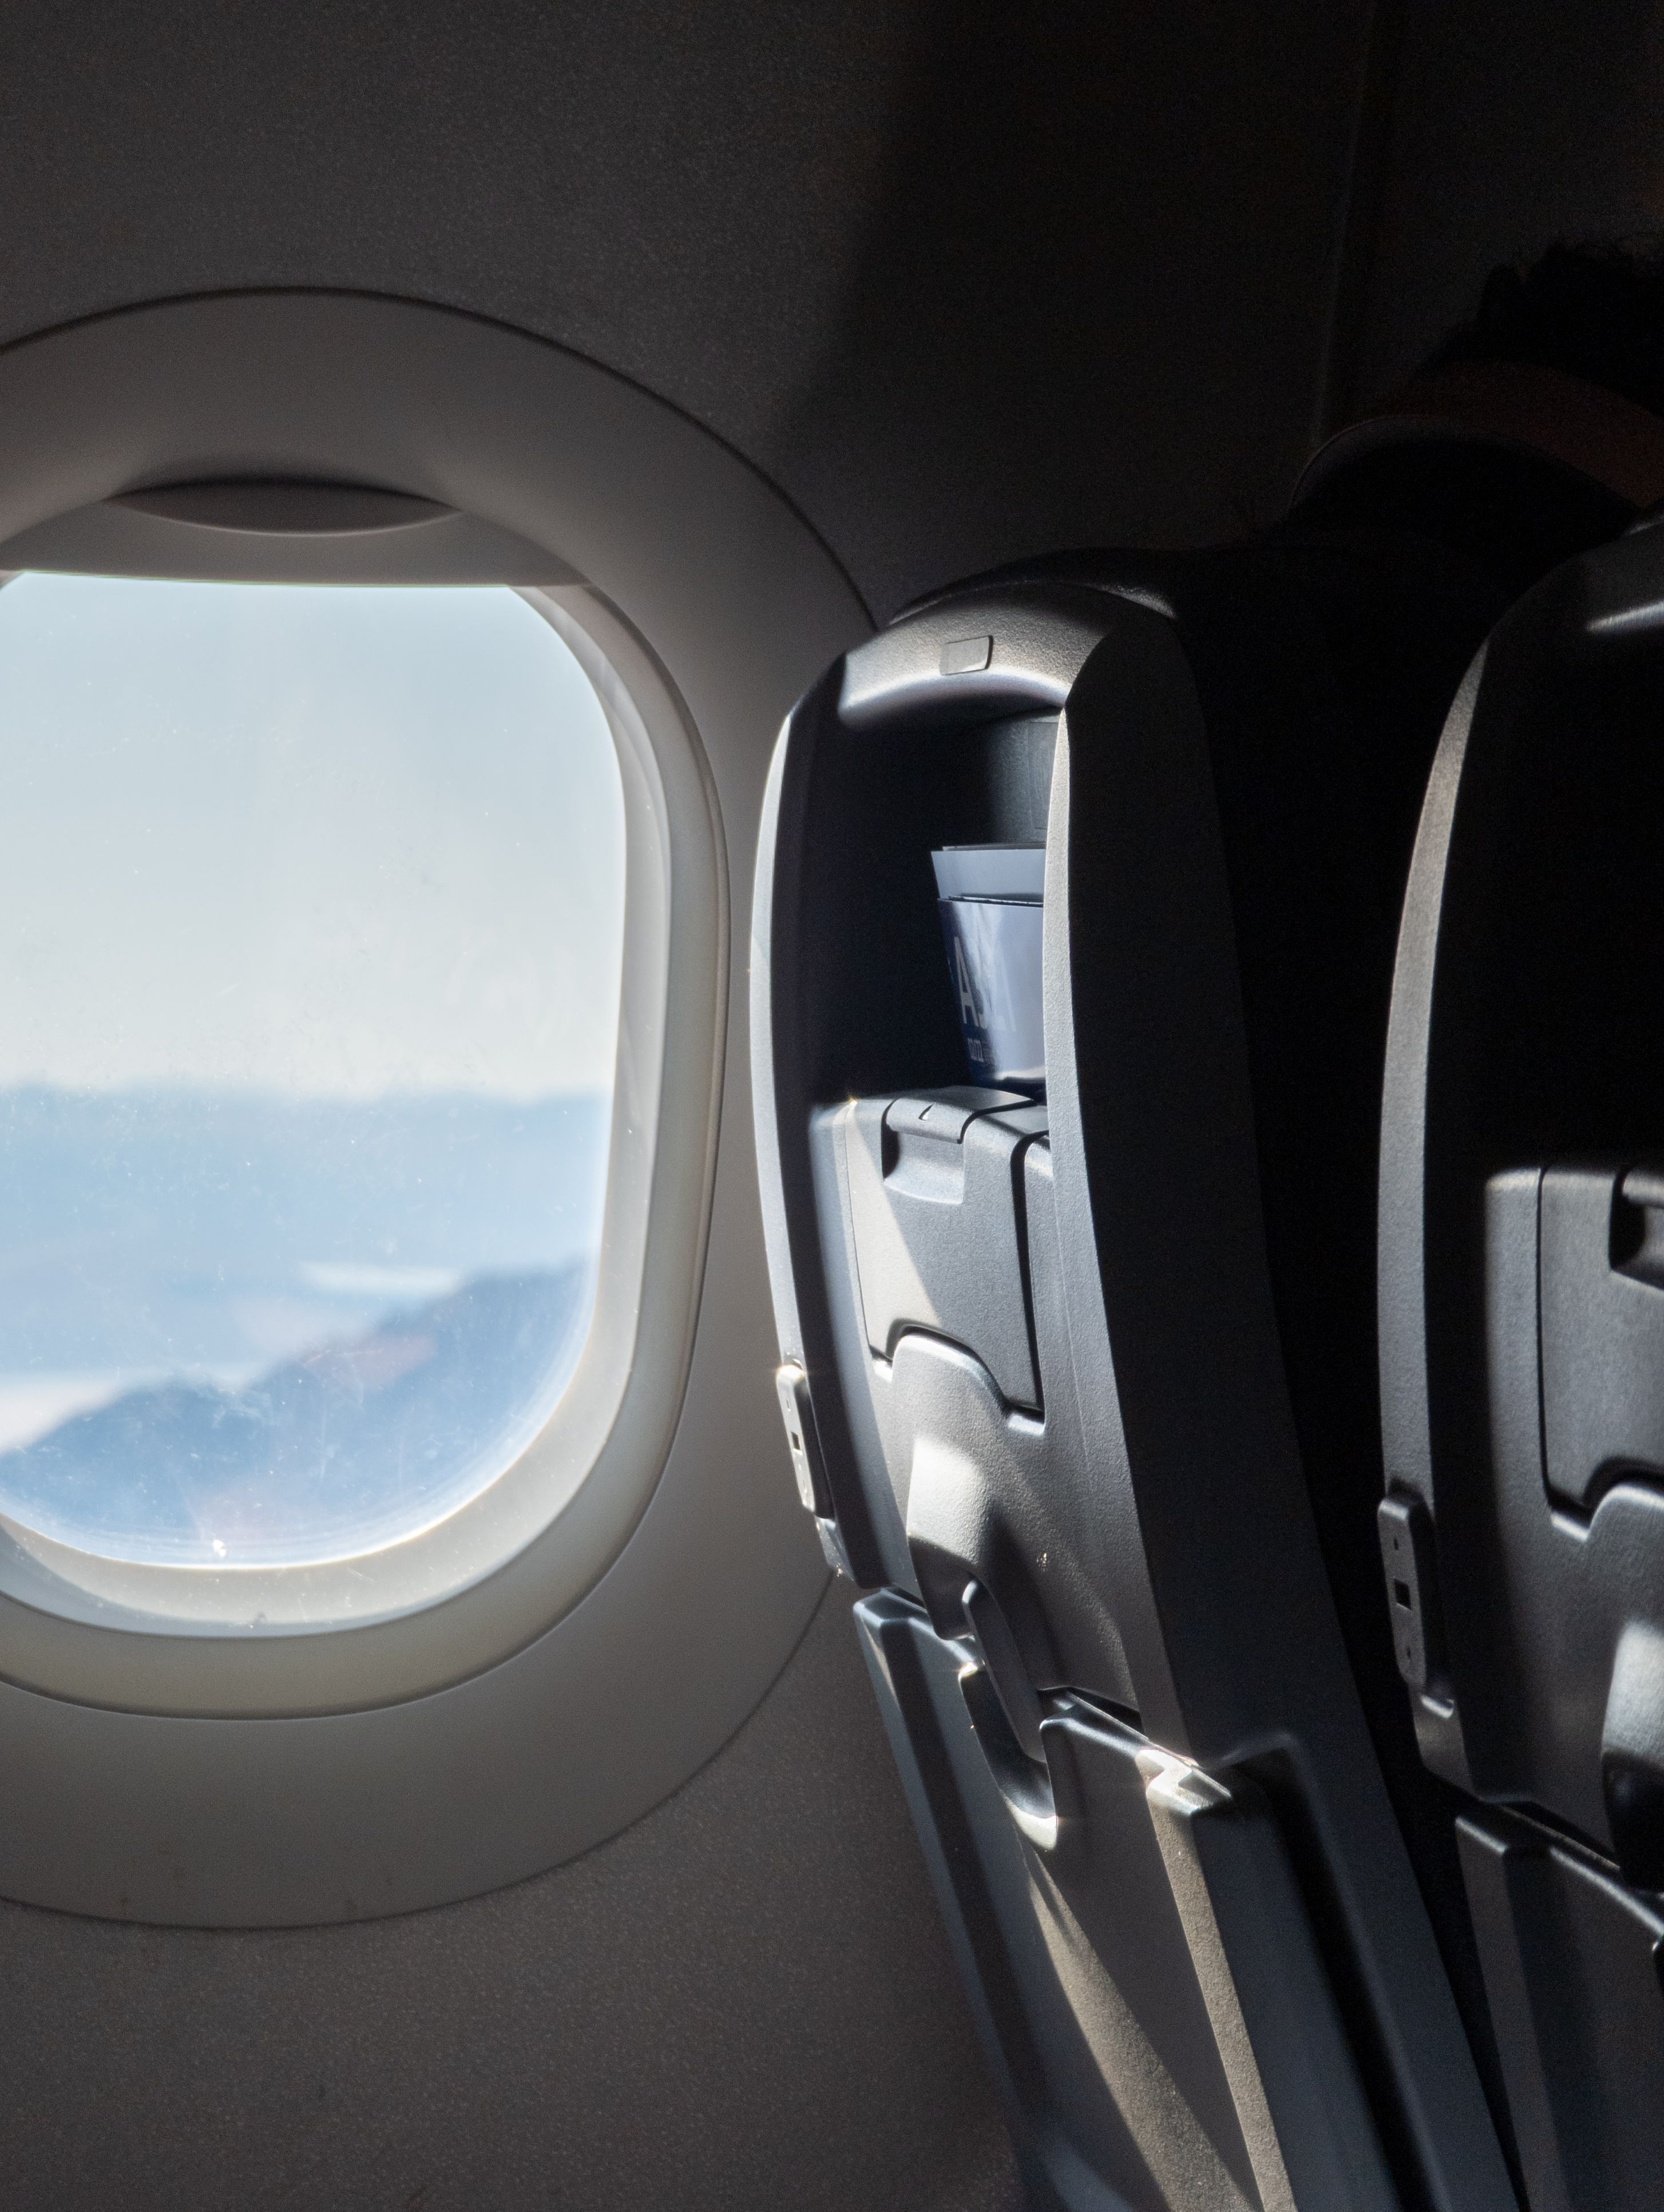 File foto RAW yang memperlihatkan jendela dan kursi pesawat, diedit untuk mengubah Bayangannya.